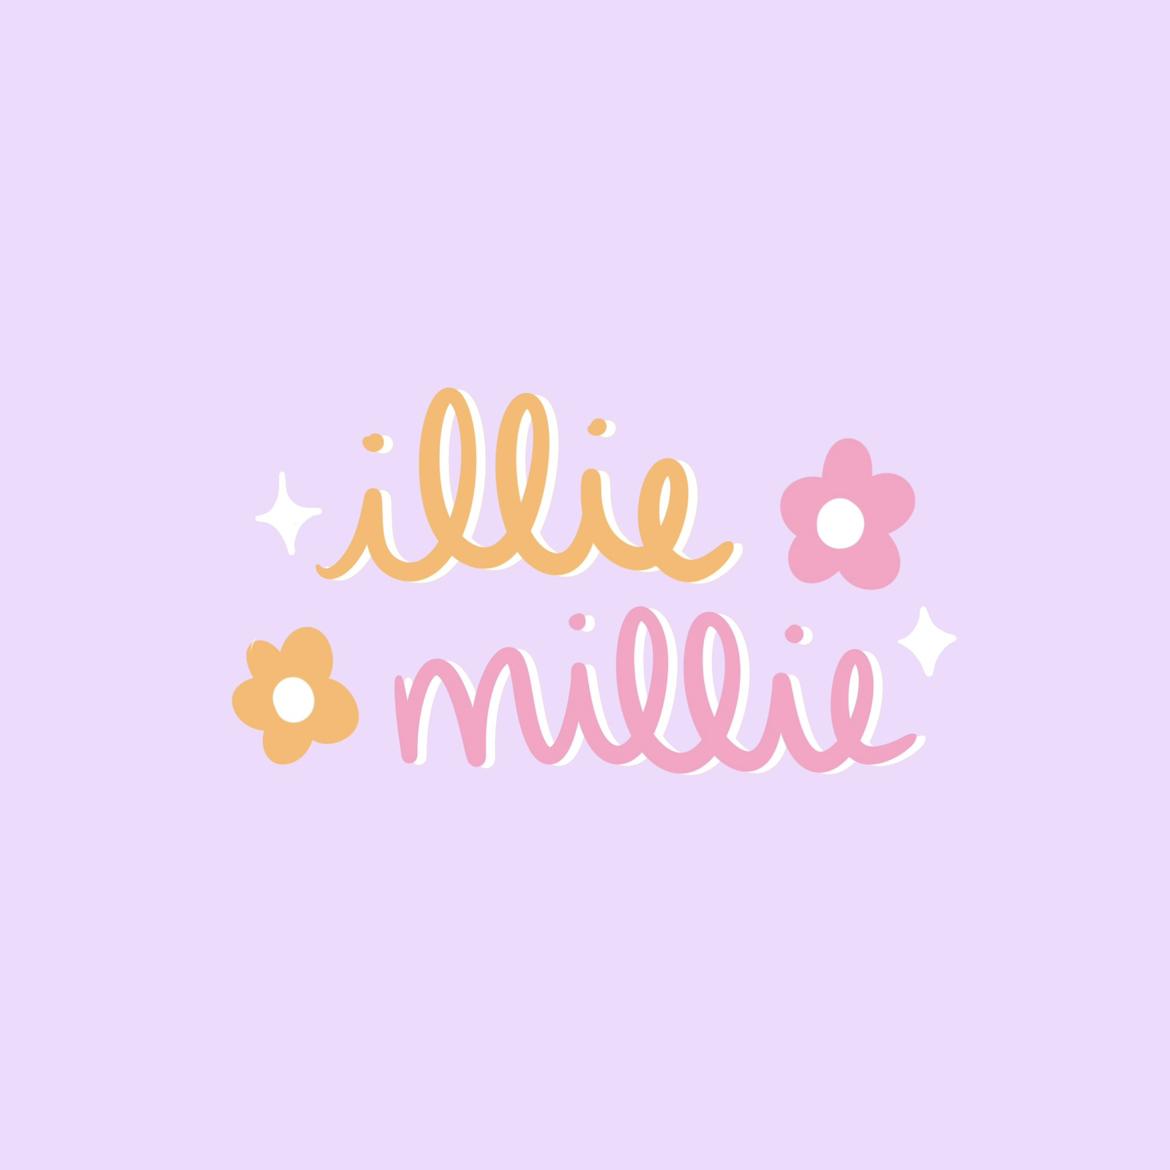 Illie Millie's images